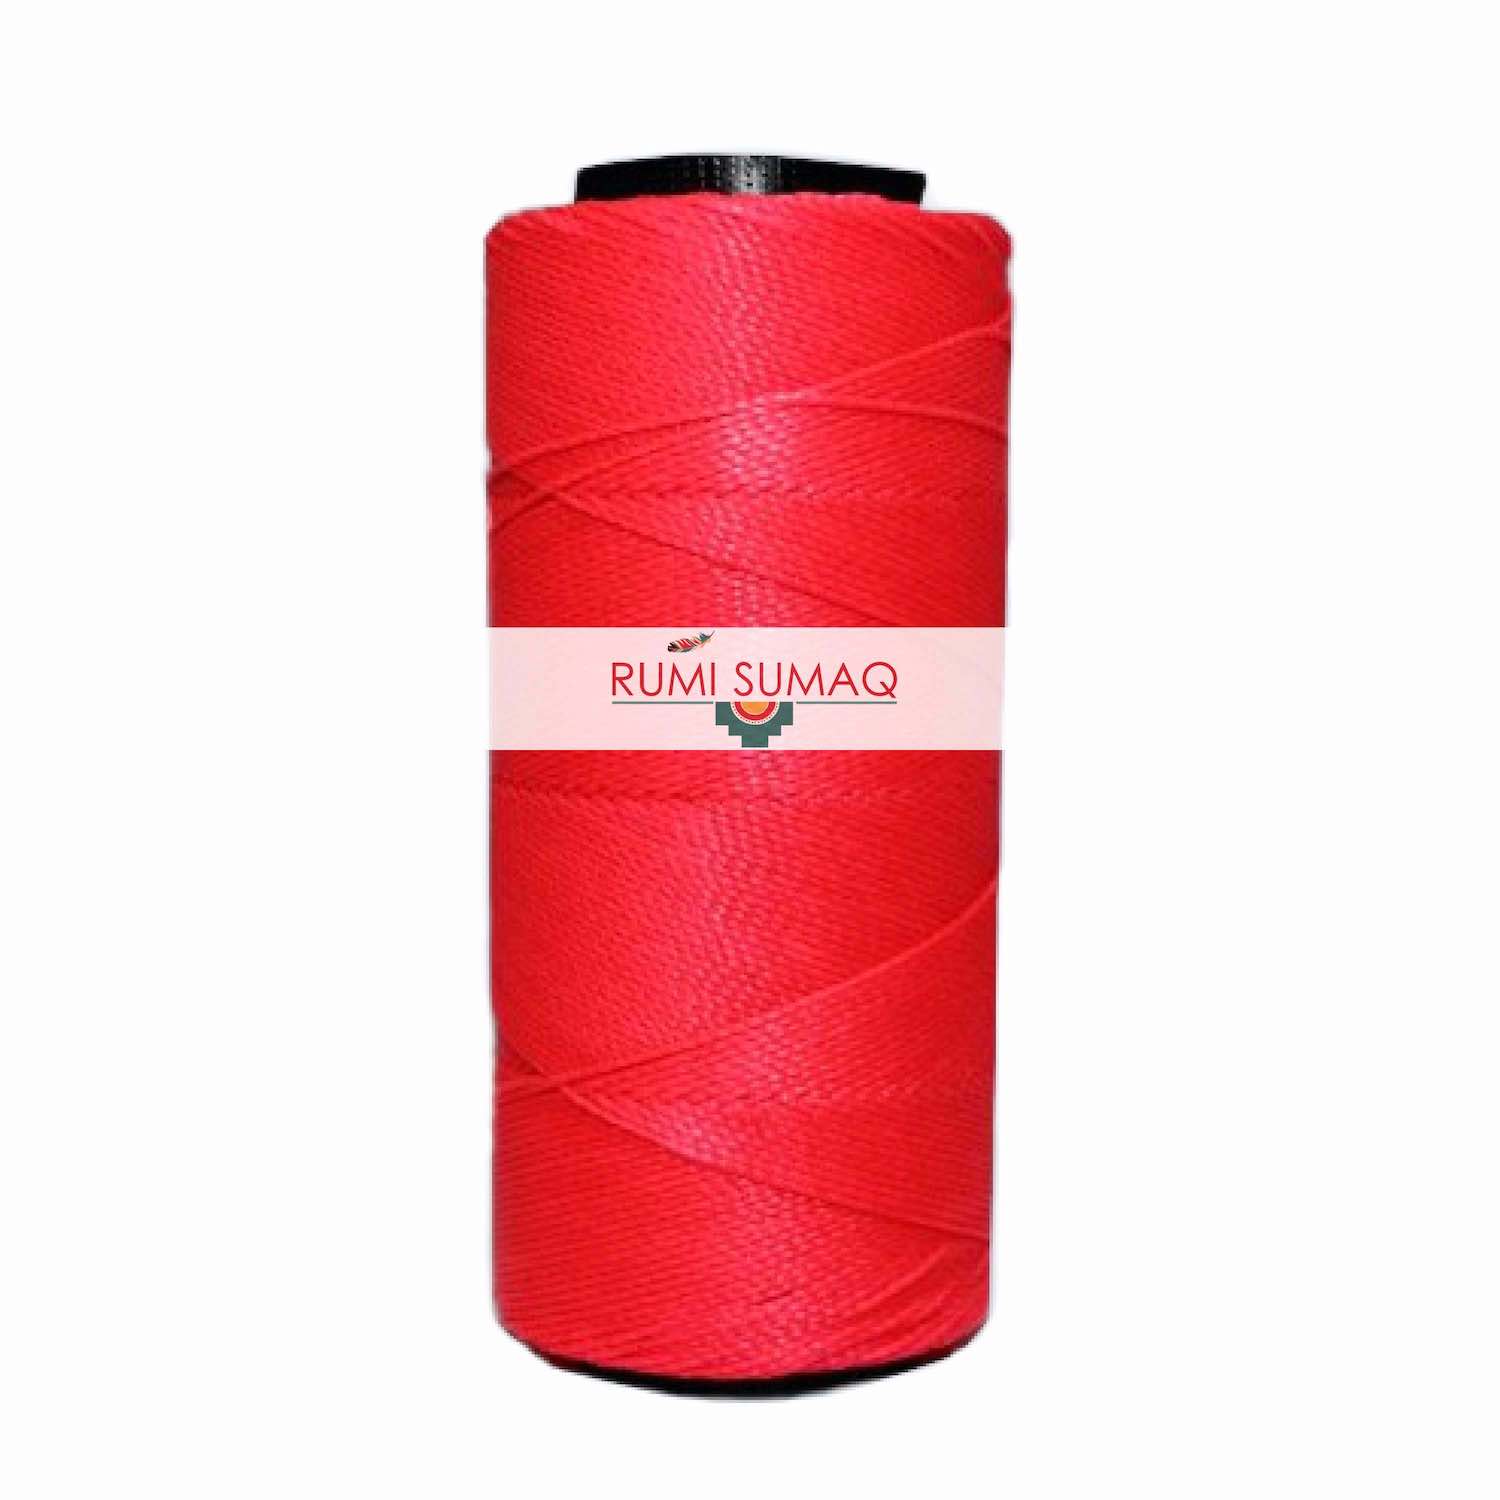 Settanyl 09-328 Neon Pink Waxed Polyester Cord 1mm Setta Encerada Rosada | RUMI SUMAQ Brazilian Waxed Cords